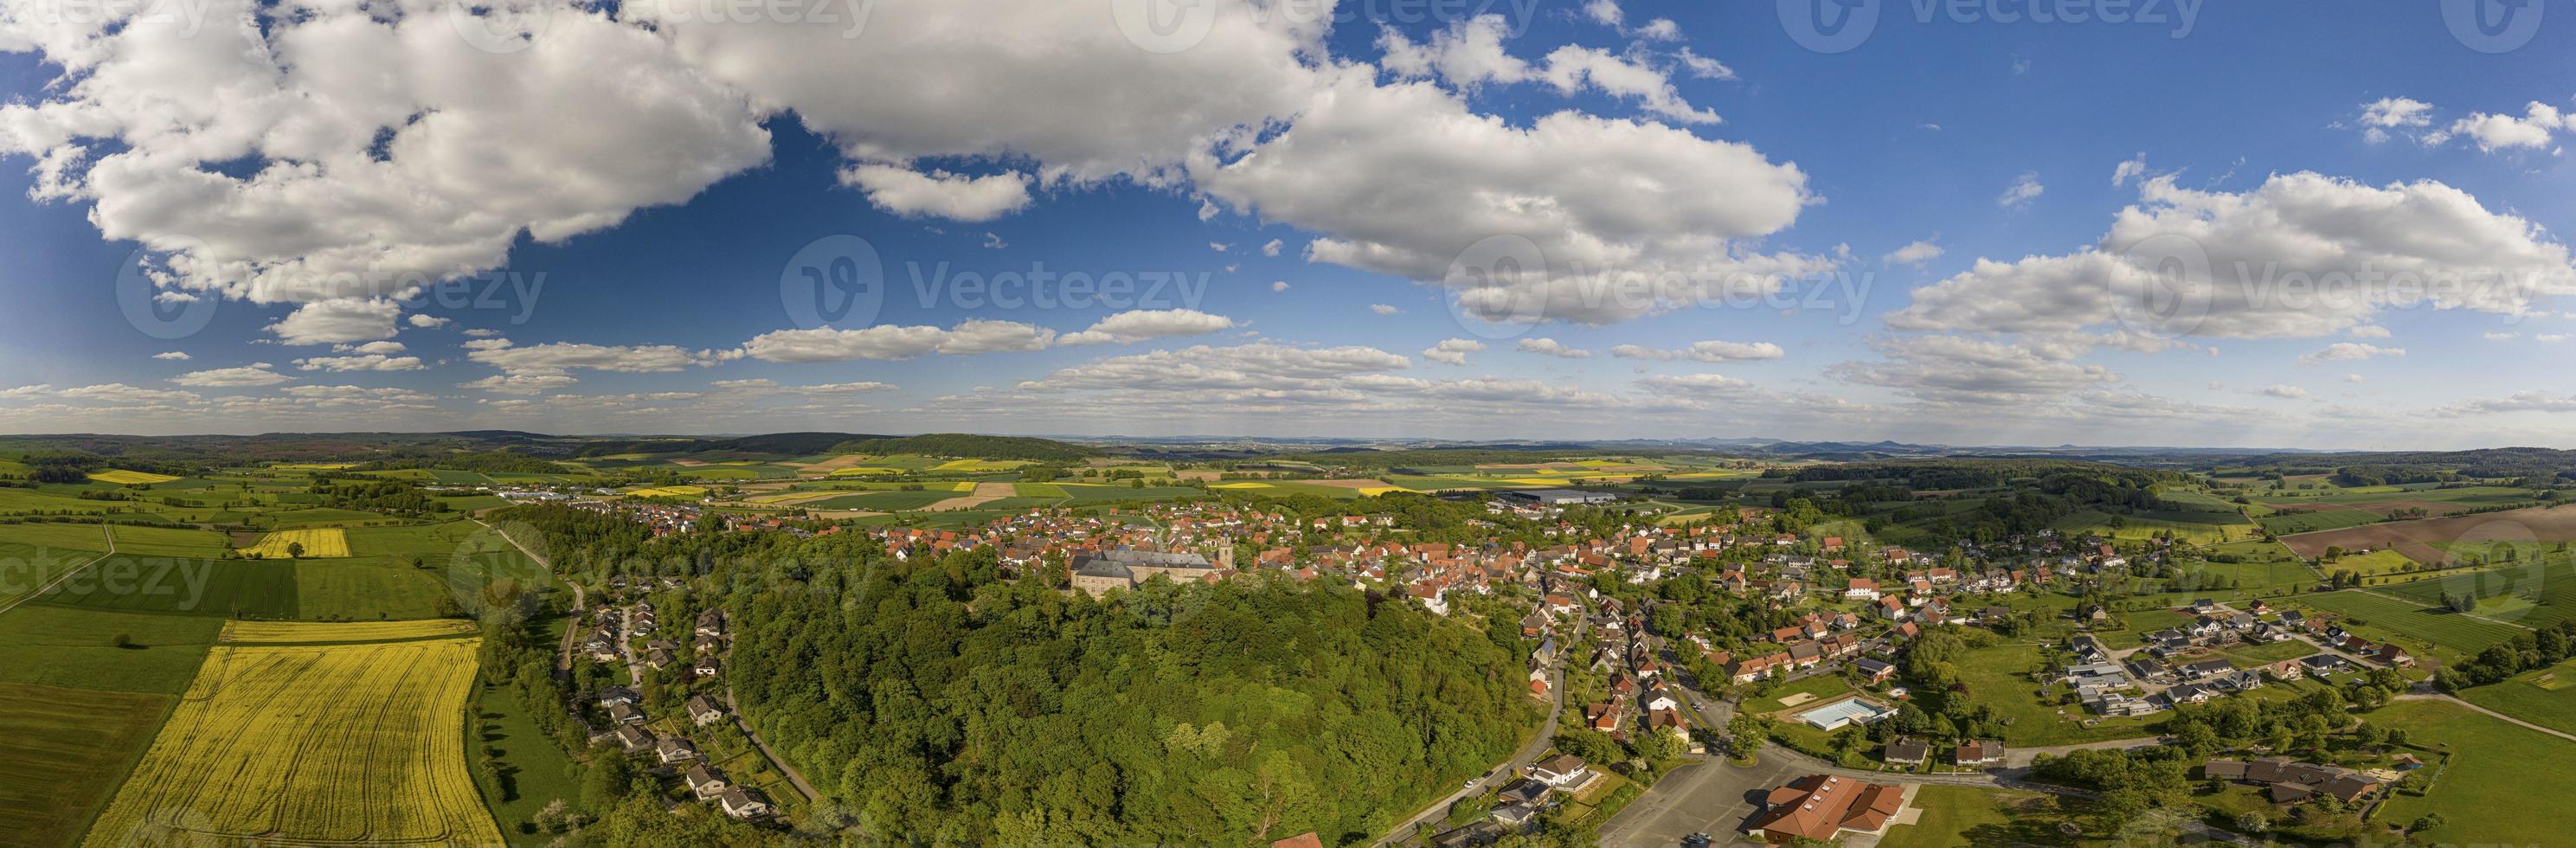 imagem panorâmica drone da cidade diemelstadt no norte de hesse na alemanha durante o dia foto